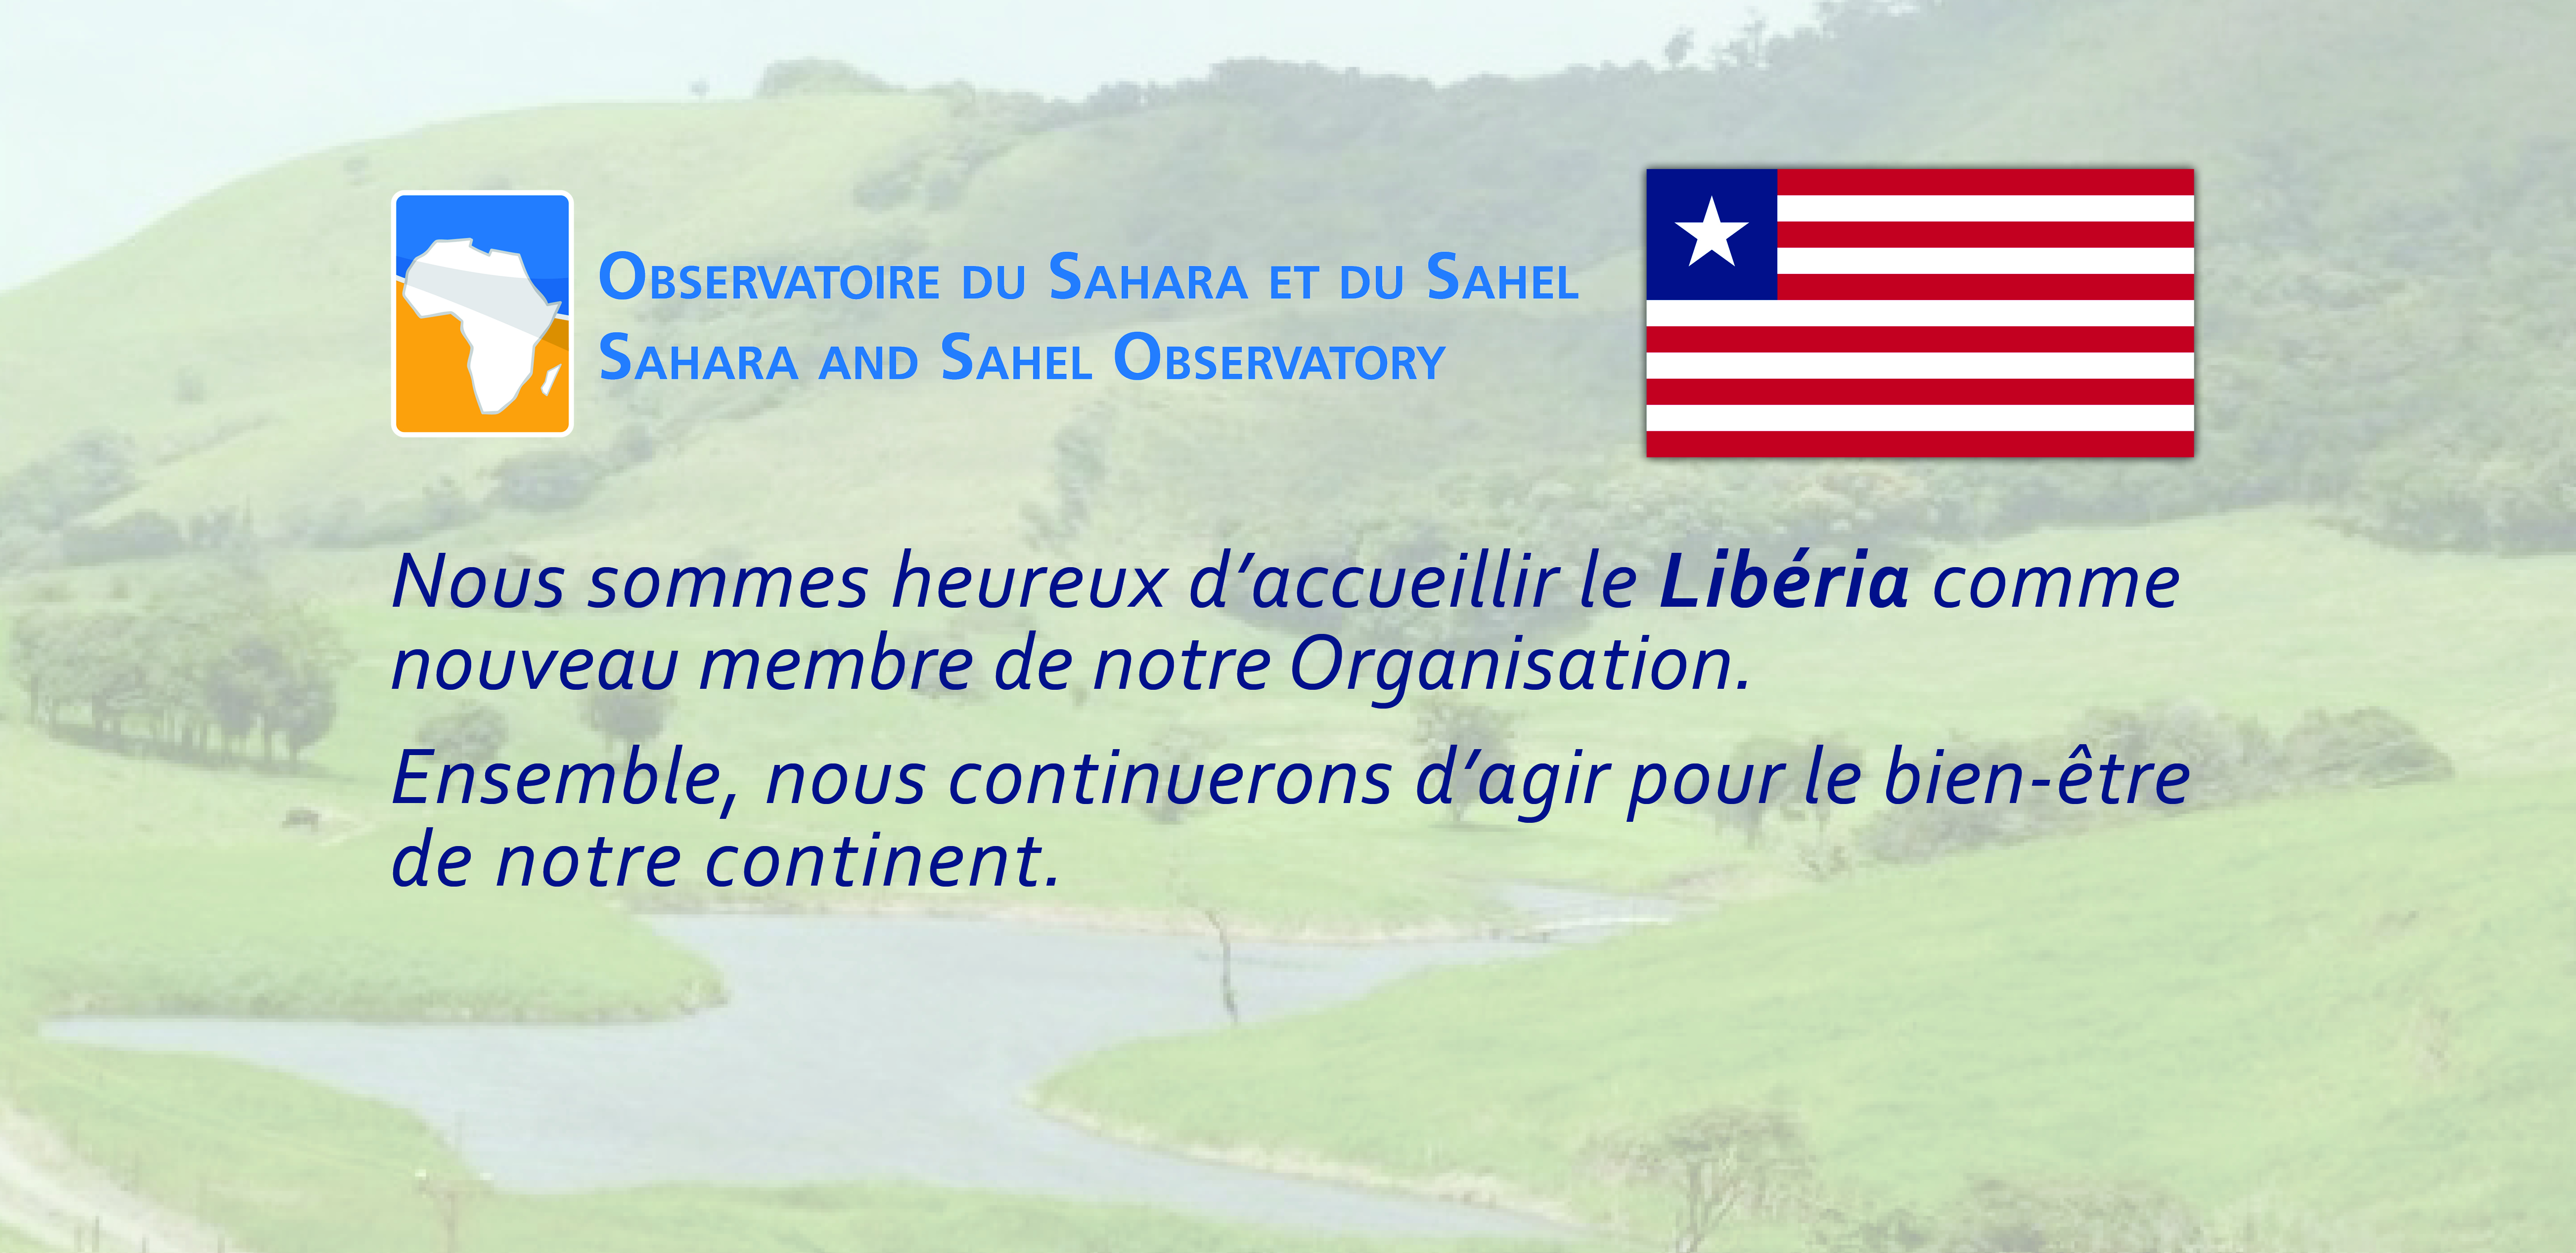  Le Libéria est officiellement membre de l'Observatoire du Sahara et du Sahel 